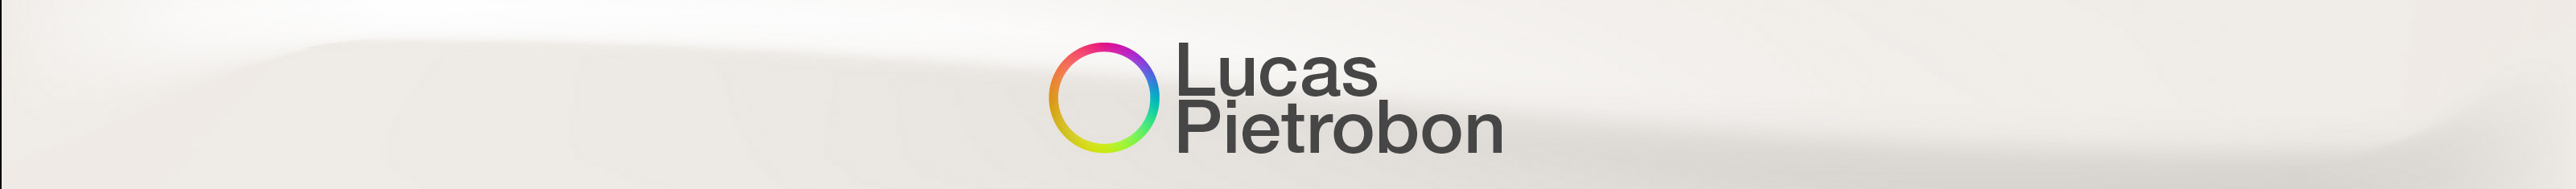 Lucas Pietrobon's profile banner